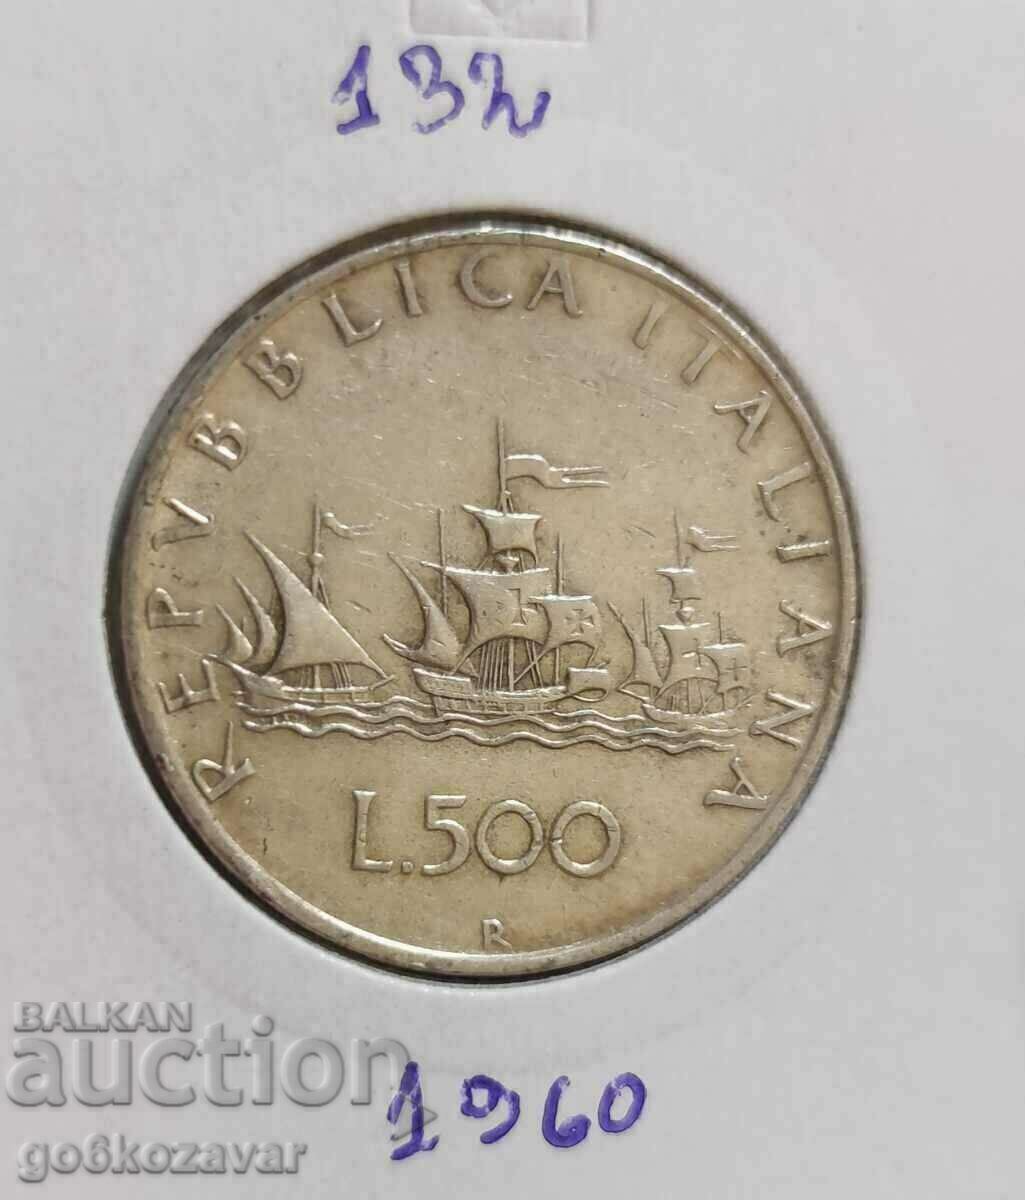 Italy 500 lira 1960 Silver!